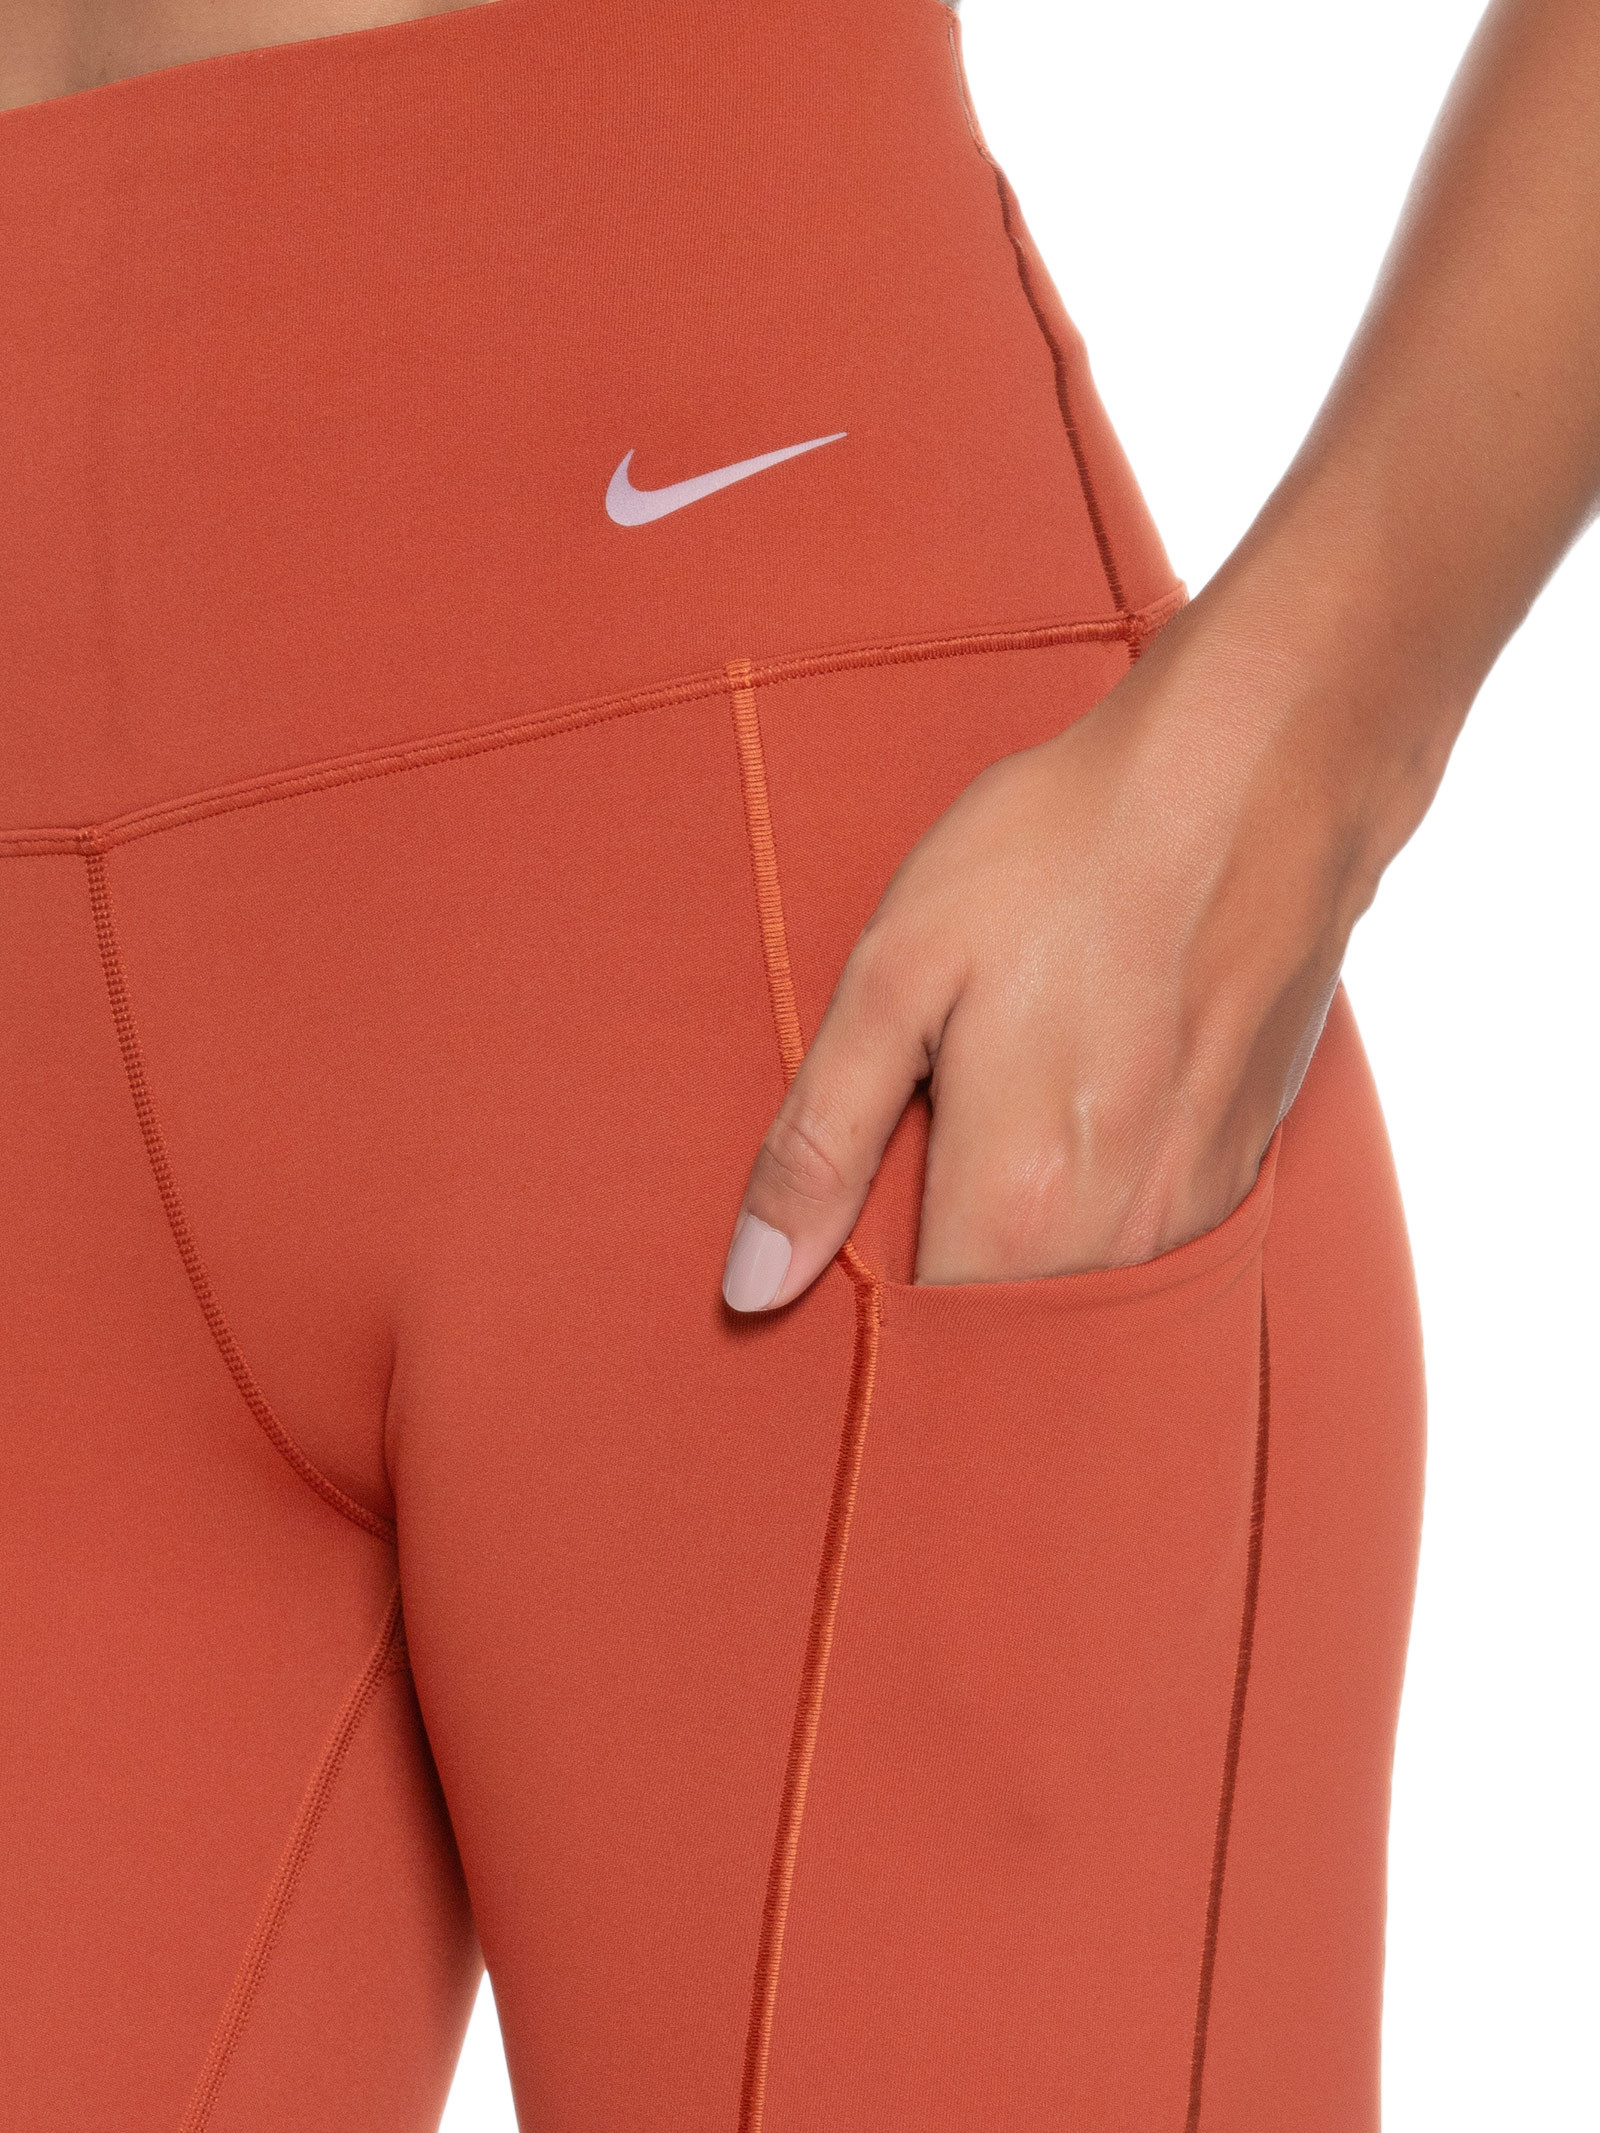 Calça Legging Nike Universa - Adulto em Promoção